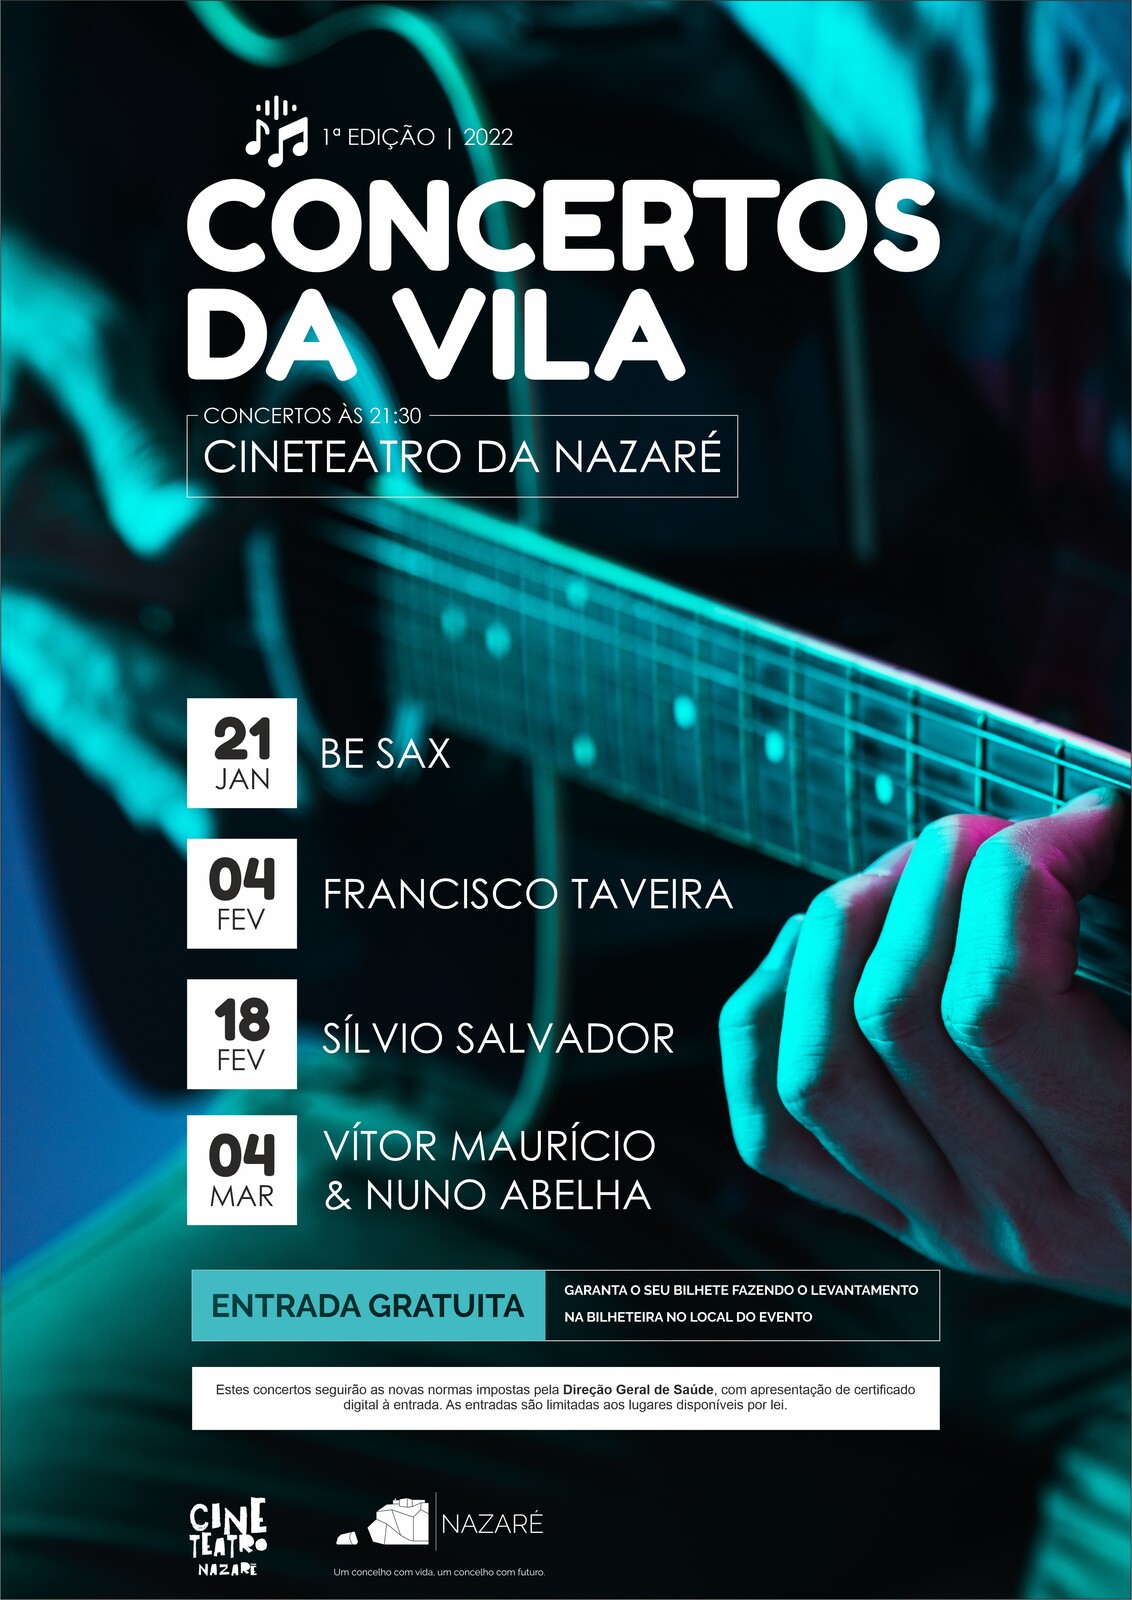 Concertos da Vila